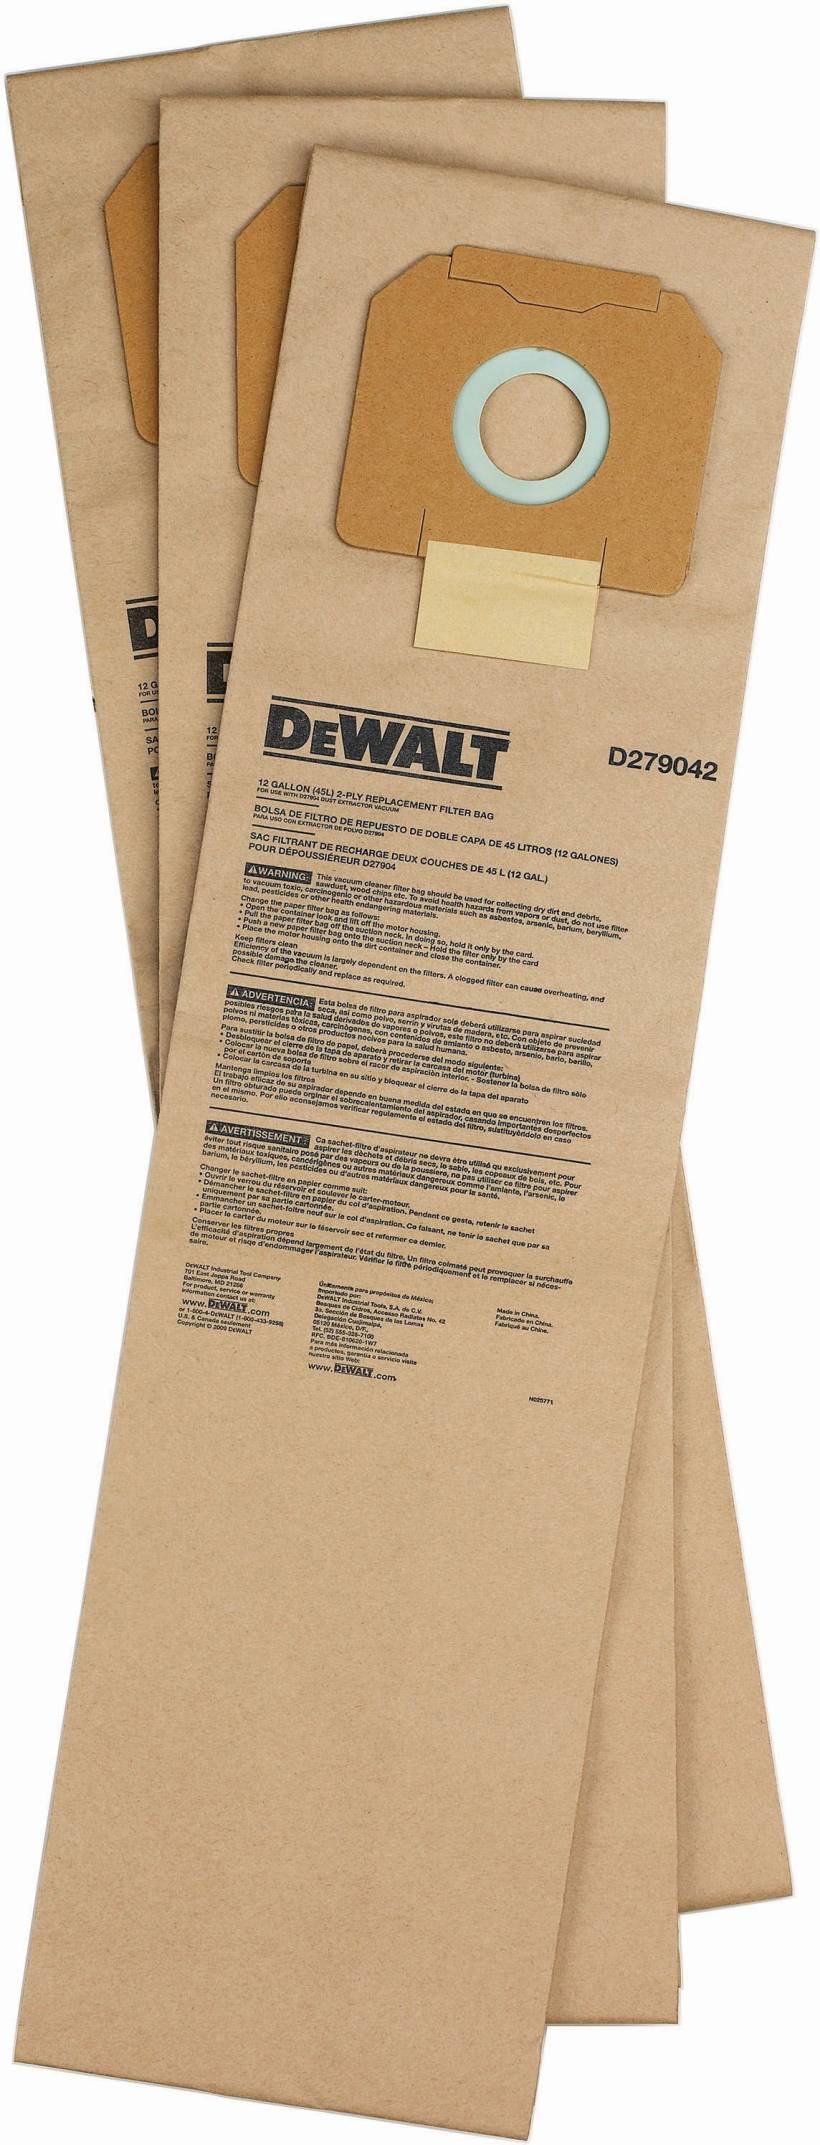 DeWalt D279042 Paper Filter Bag for D27904